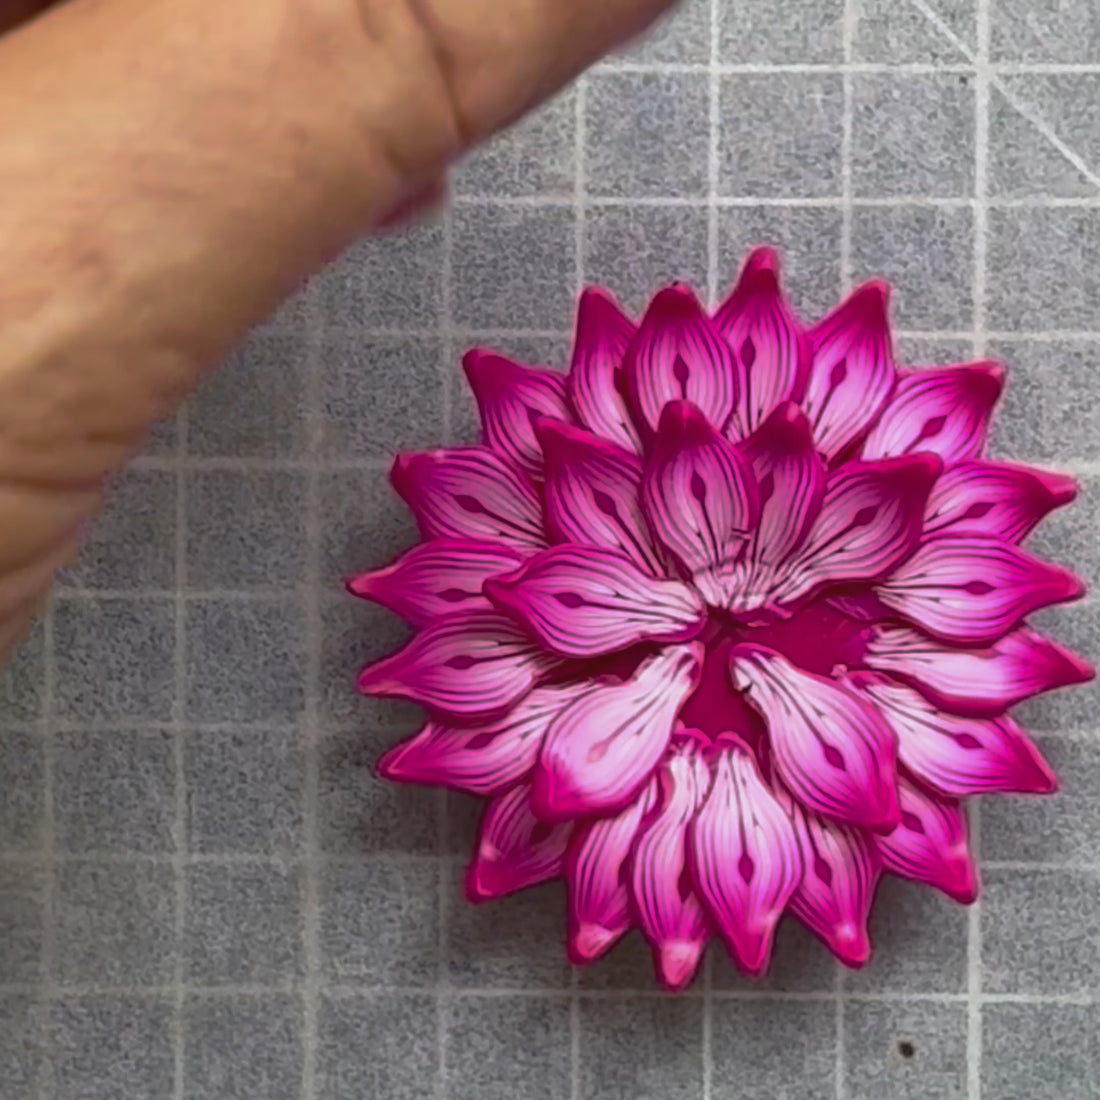 Vídeo con detalles de como se hace la flor